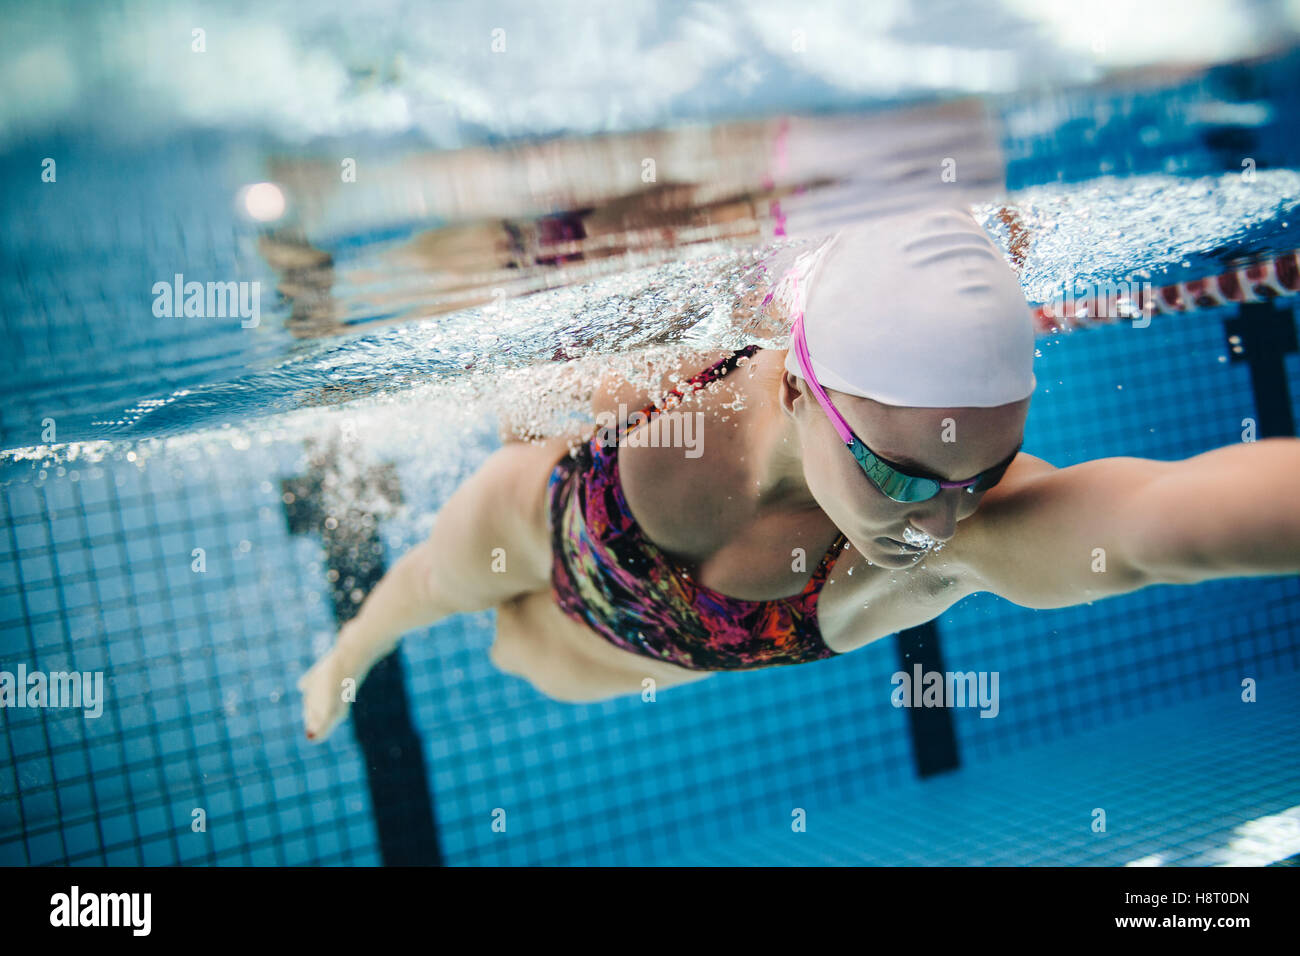 Filmación subacuática del joven nadador nadar en piscina. Colocar joven nadador que entrena en la piscina. Foto de stock